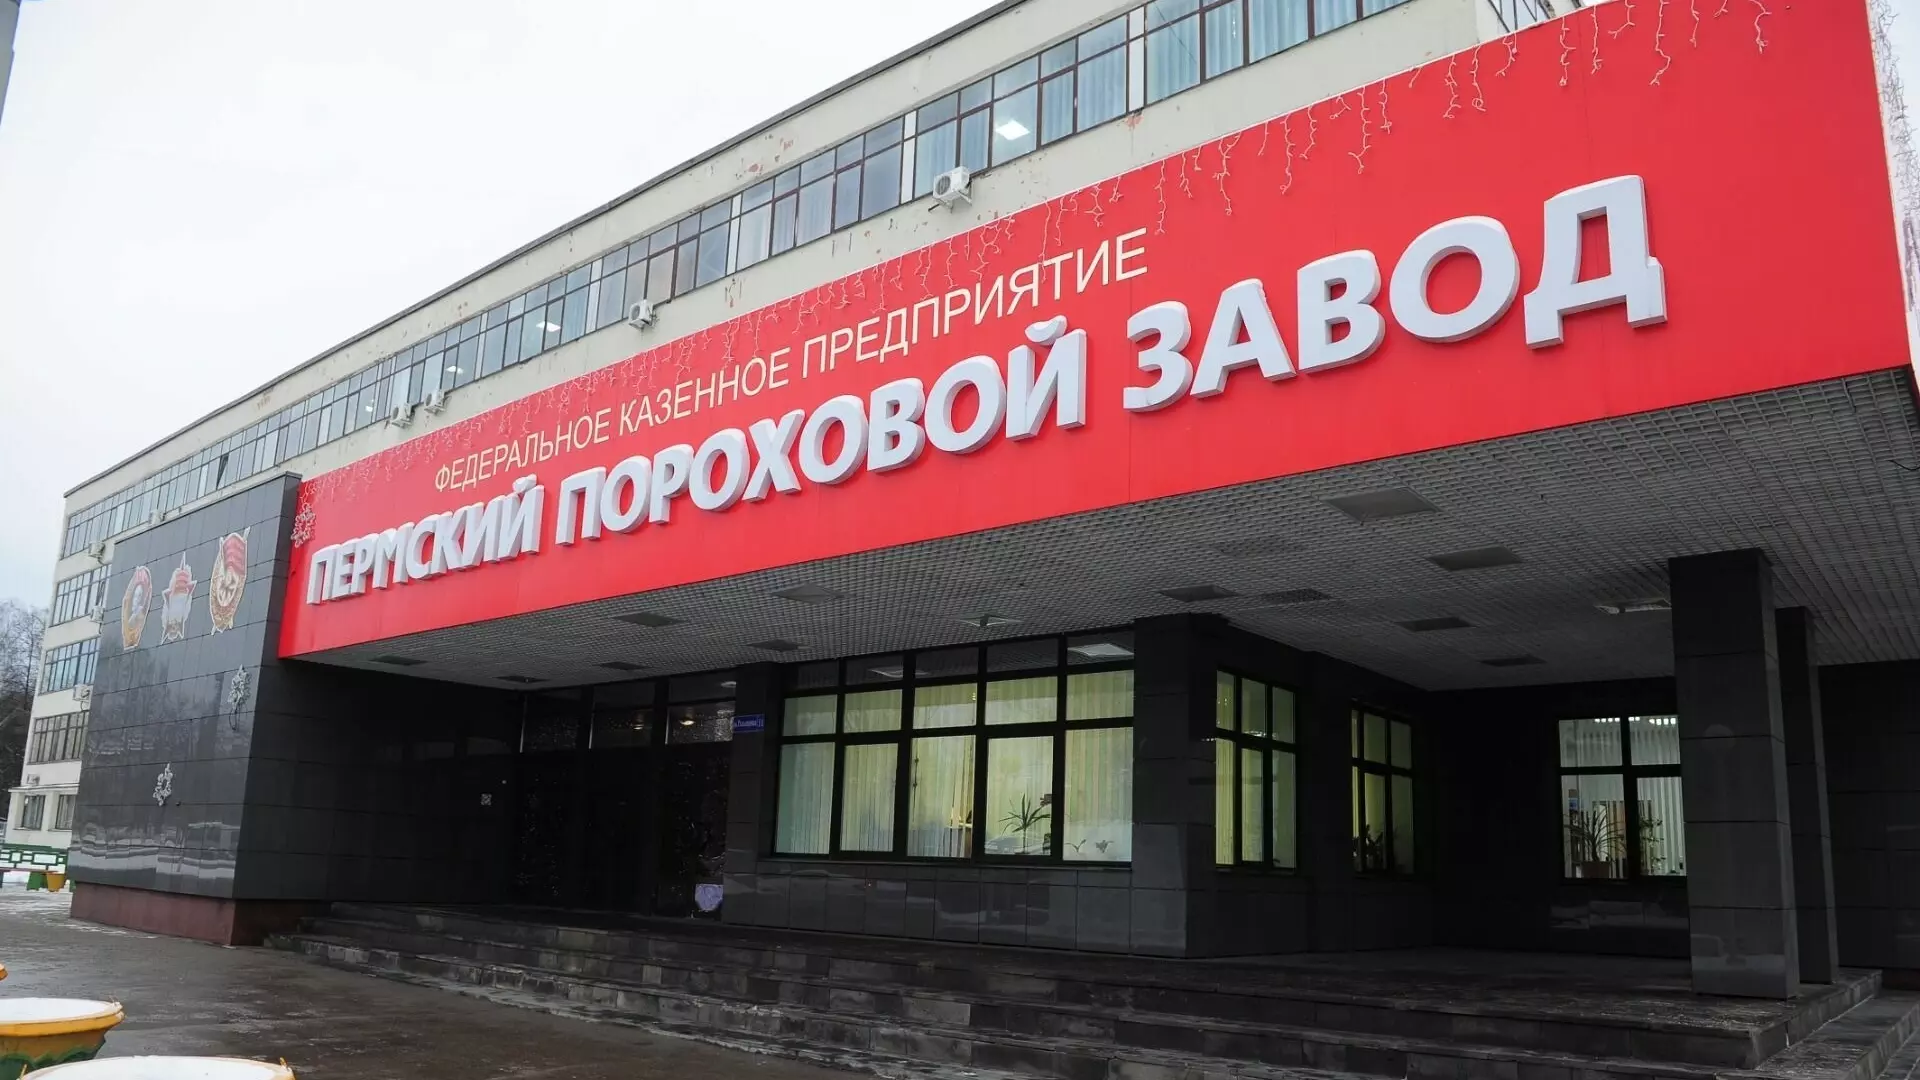 Родственники погибшего работника Пермского порохового получили 7,5 миллионов рублей